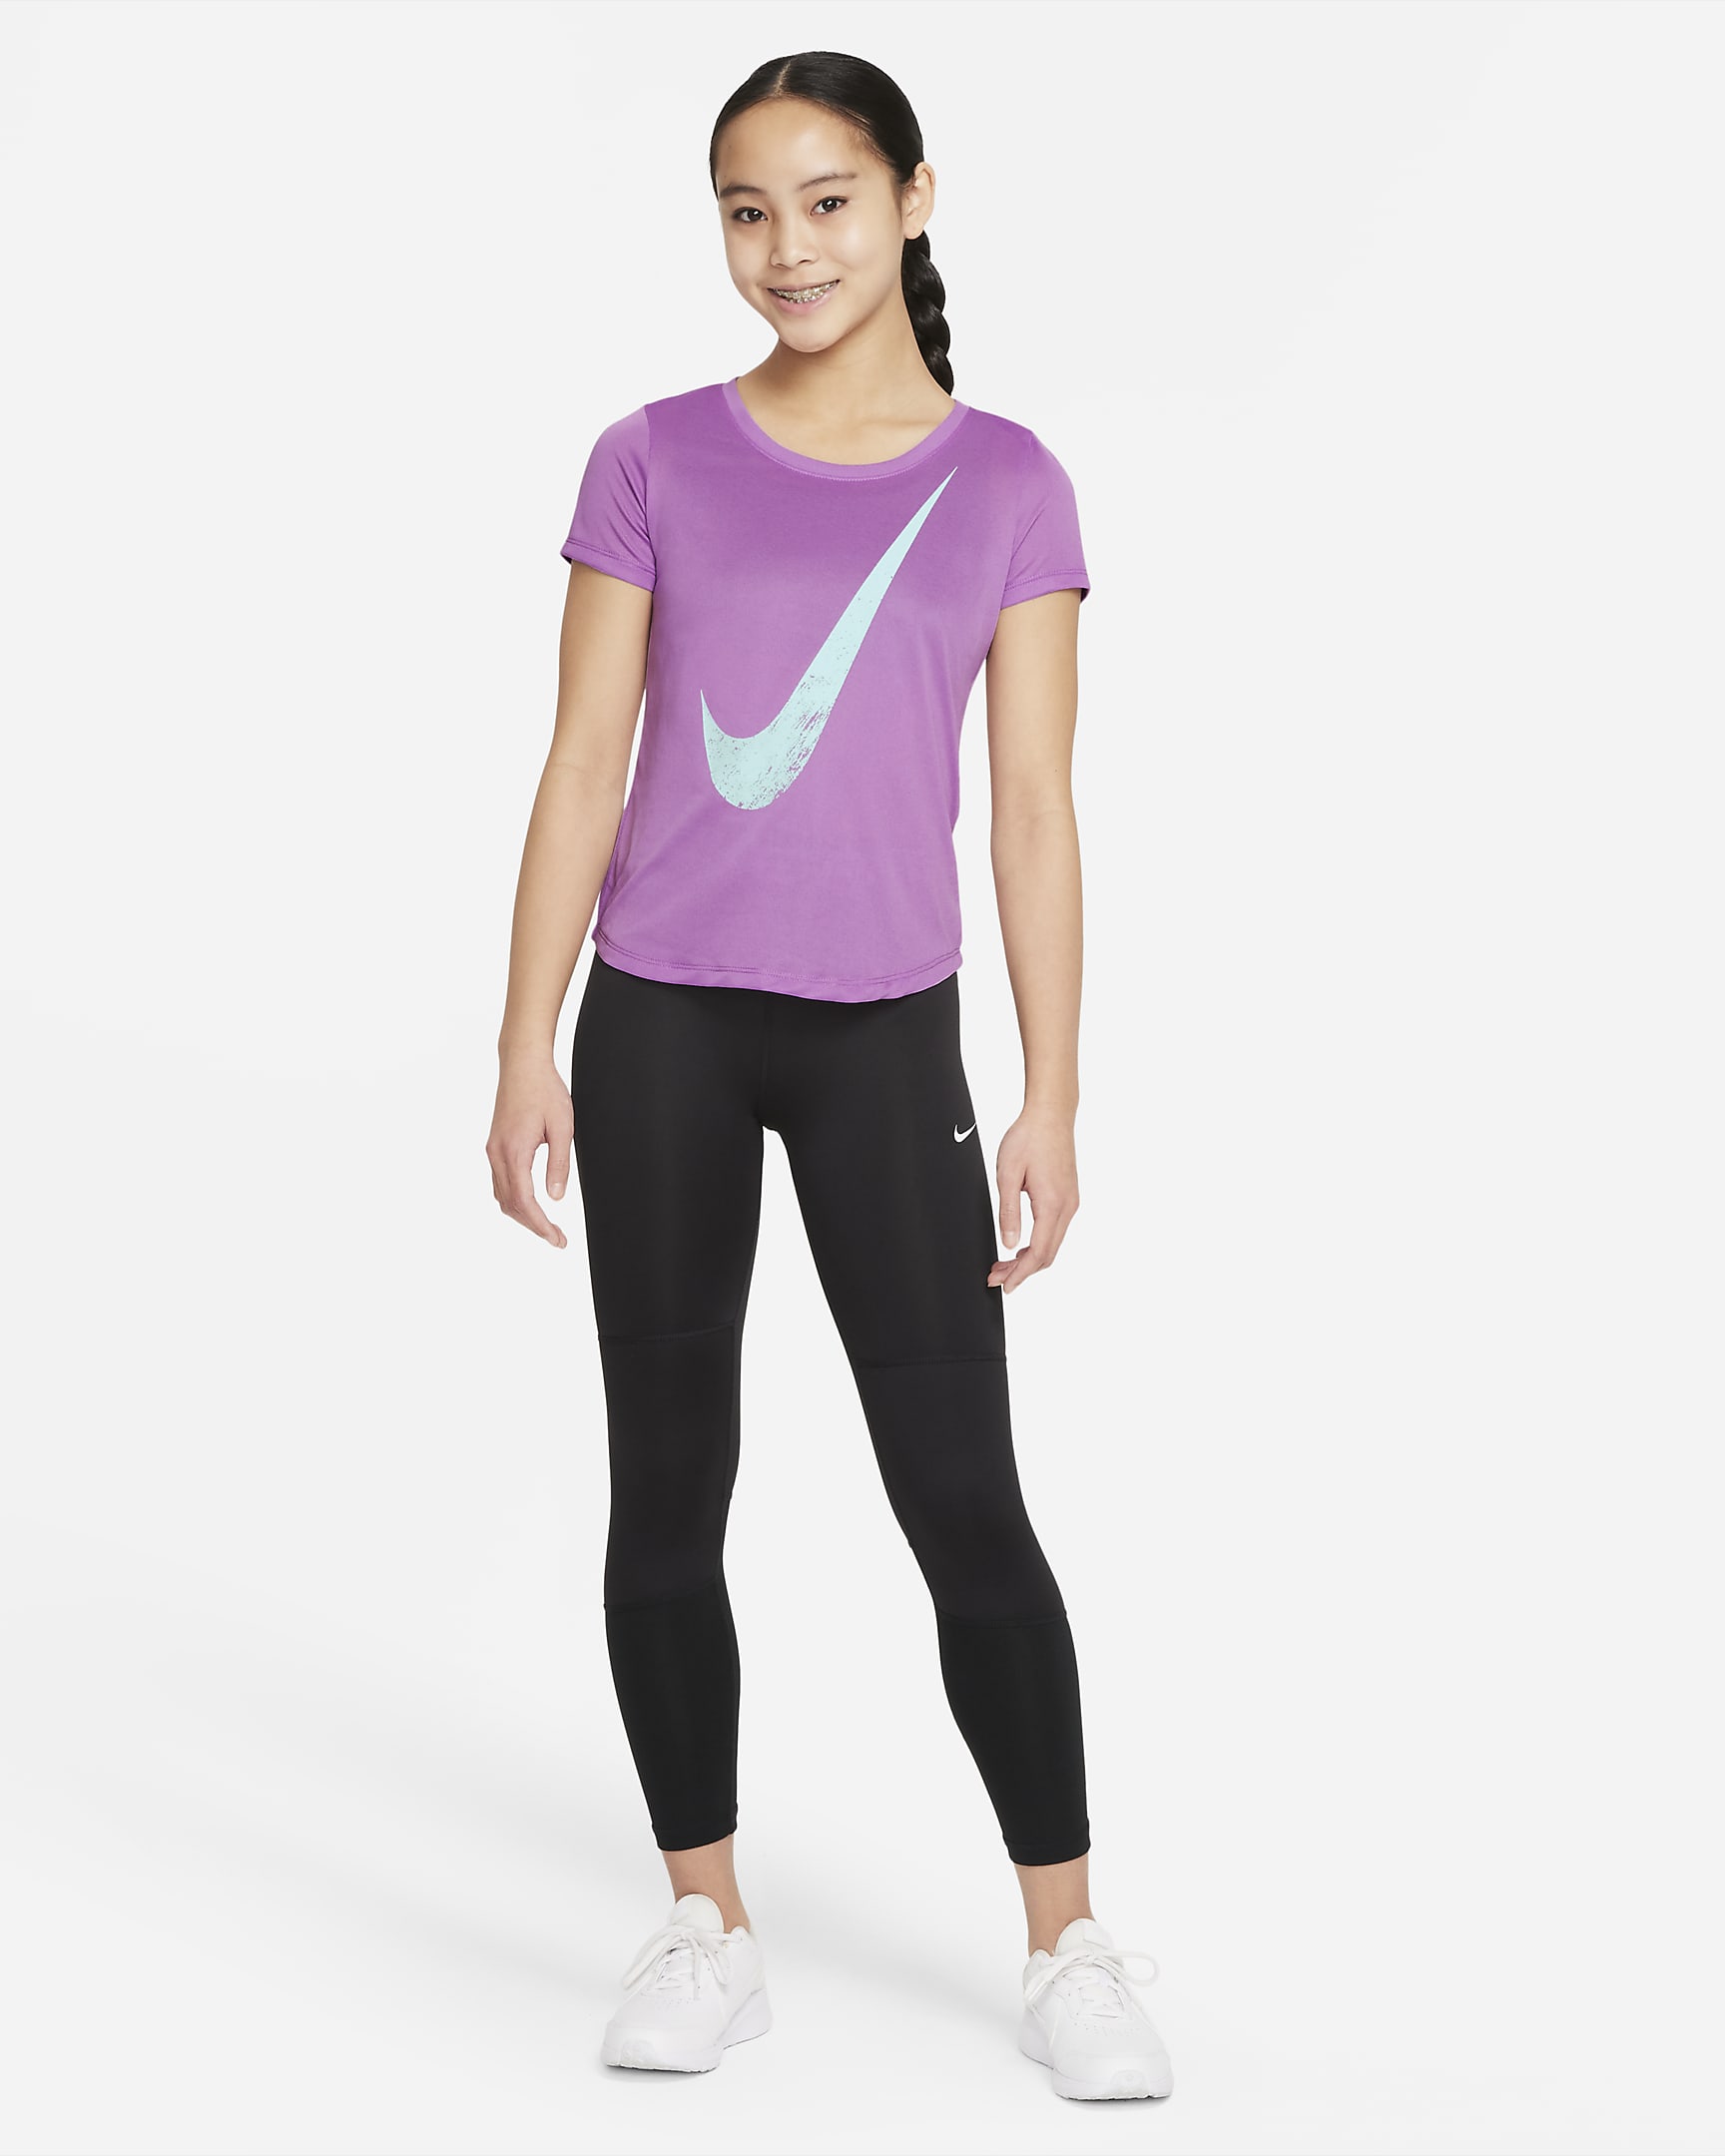 Nike Big Kids' (Girls') T-Shirt. Nike.com